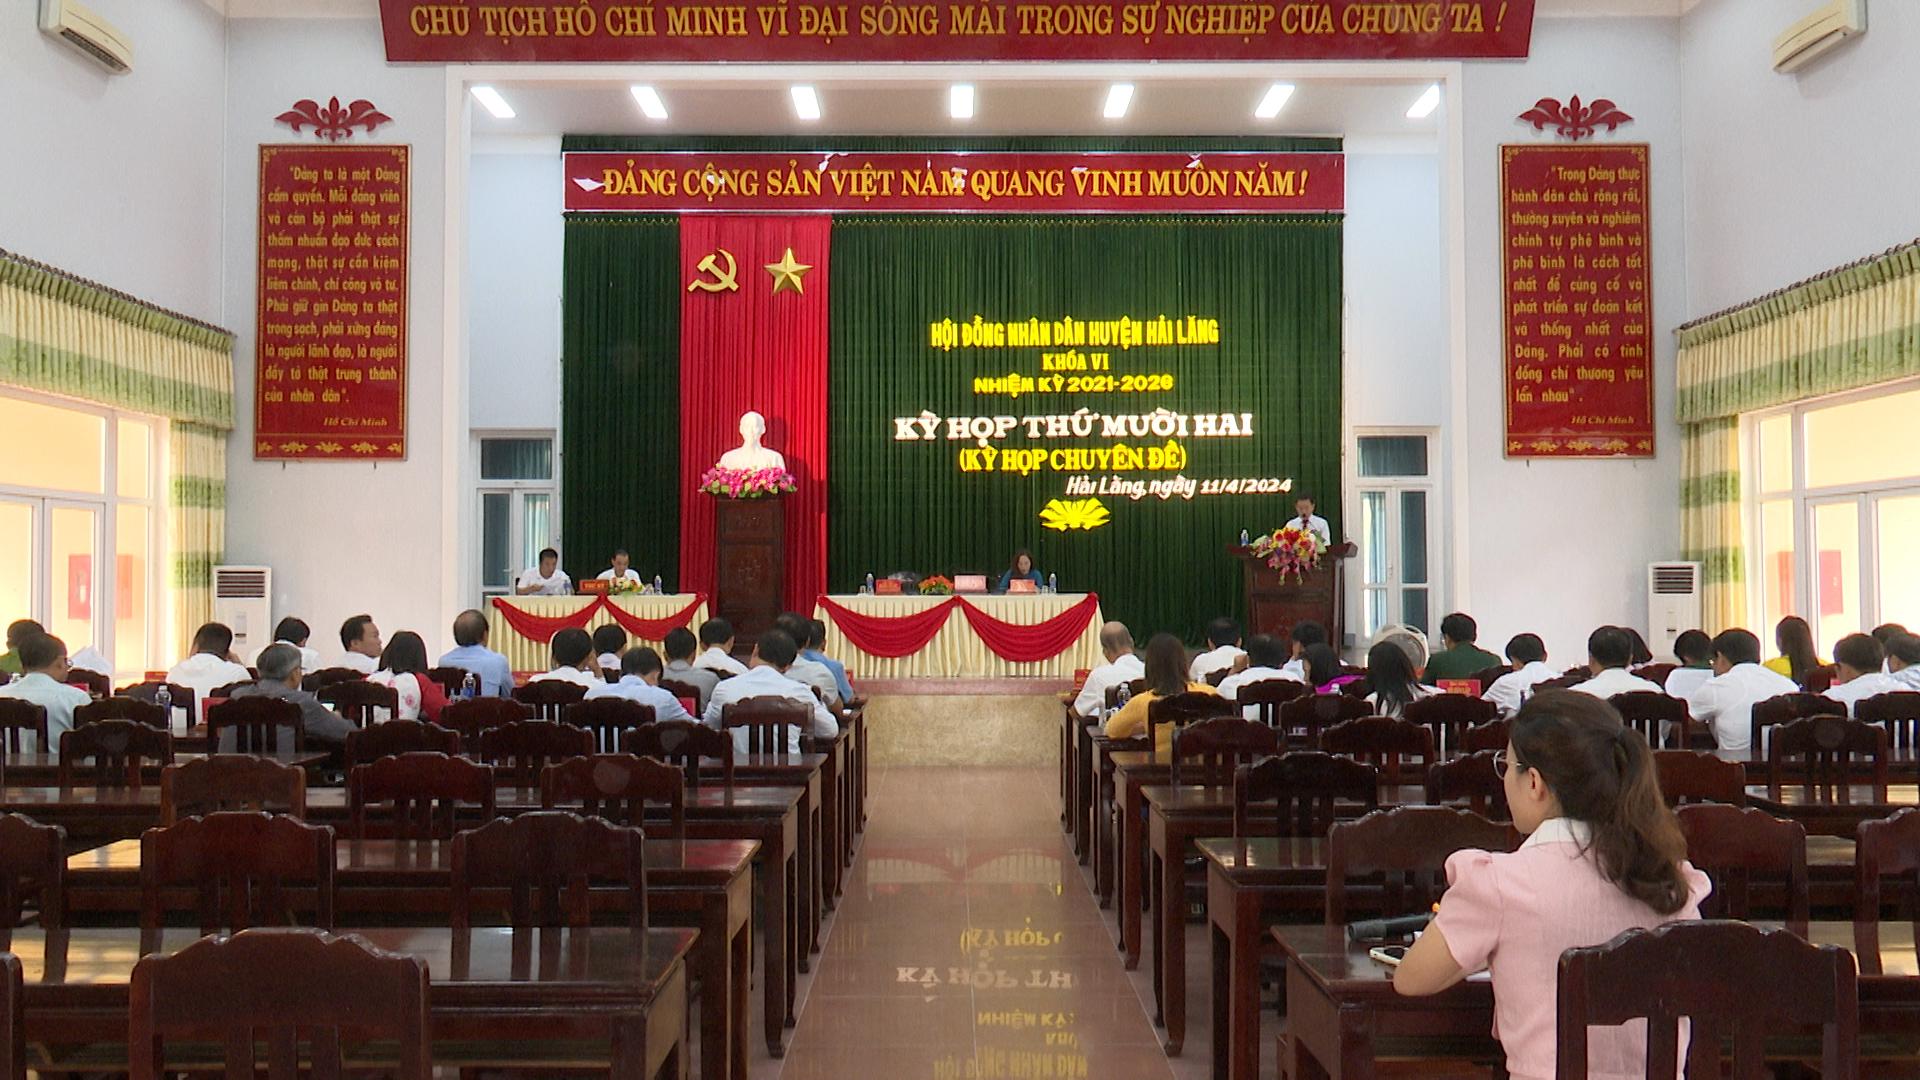 HĐND huyện Hải Lăng khóa VI tổ chức kỳ họp thứ 12 (kỳ họp chuyên đề).